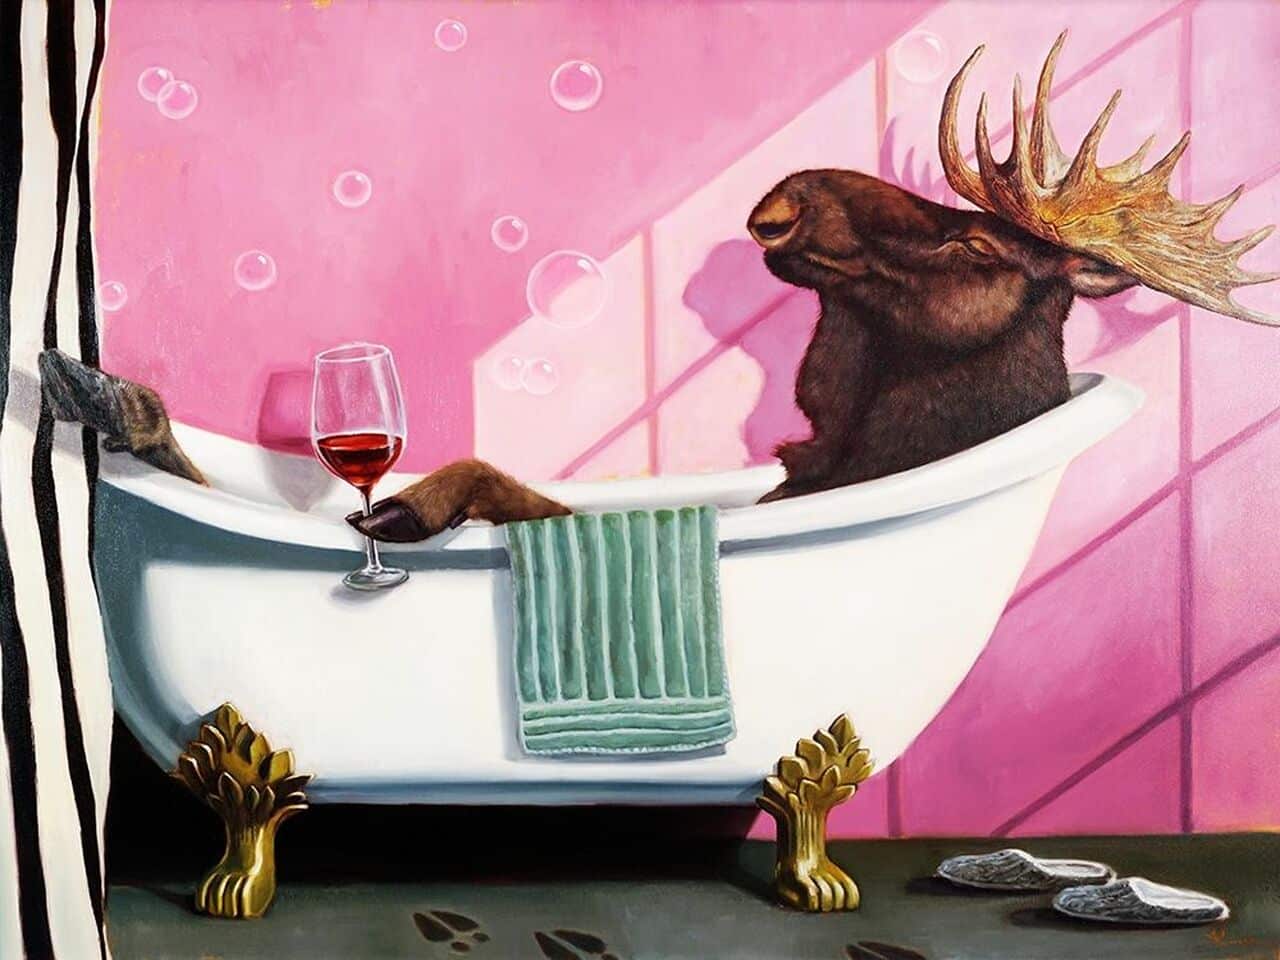 lucia_heffernan_ ciervo en la bañera